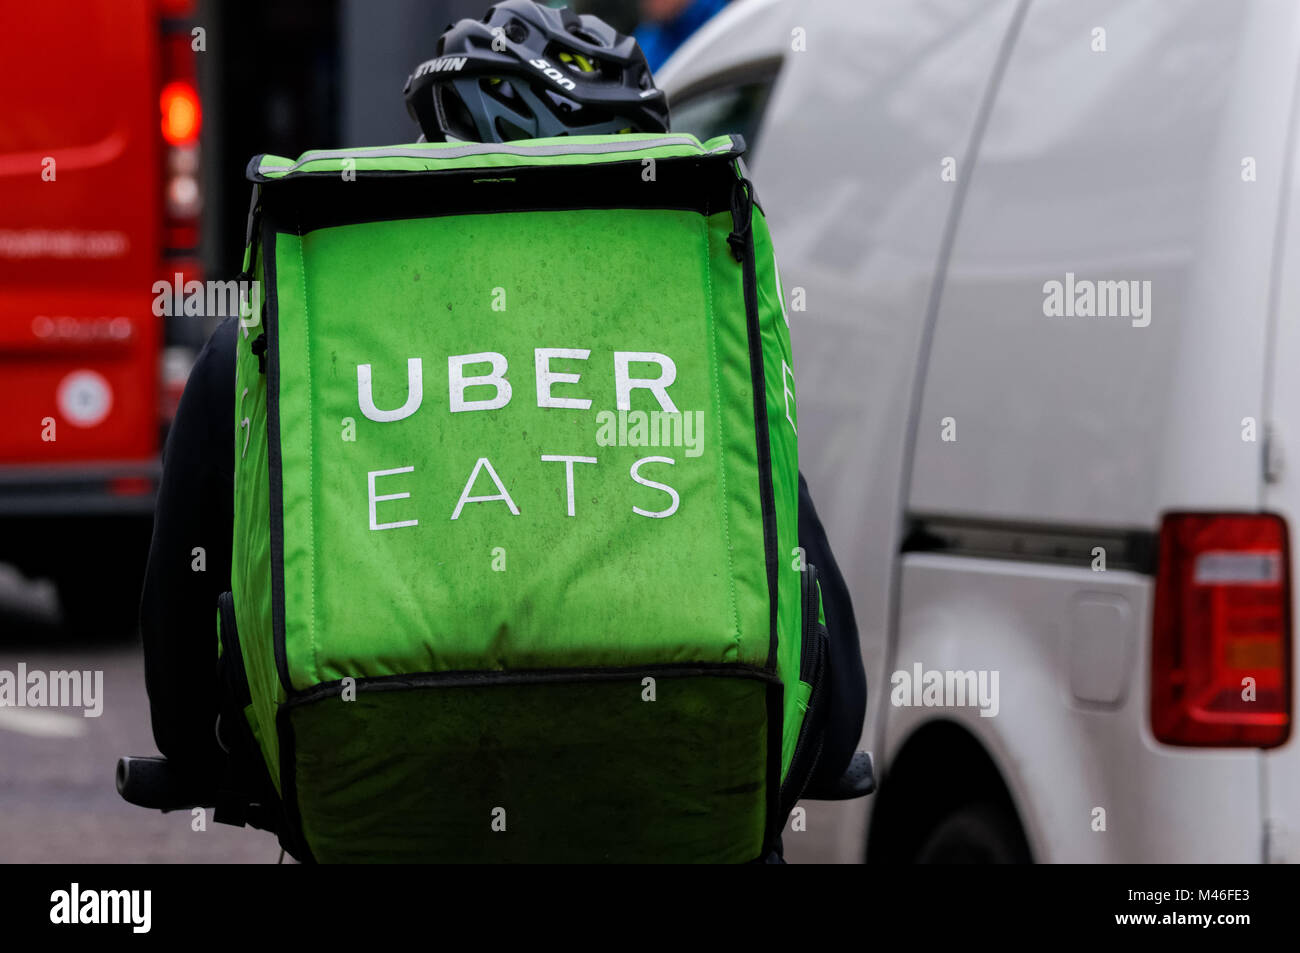 Uber eats delivery man, London England United Kingdom UK Stock Photo